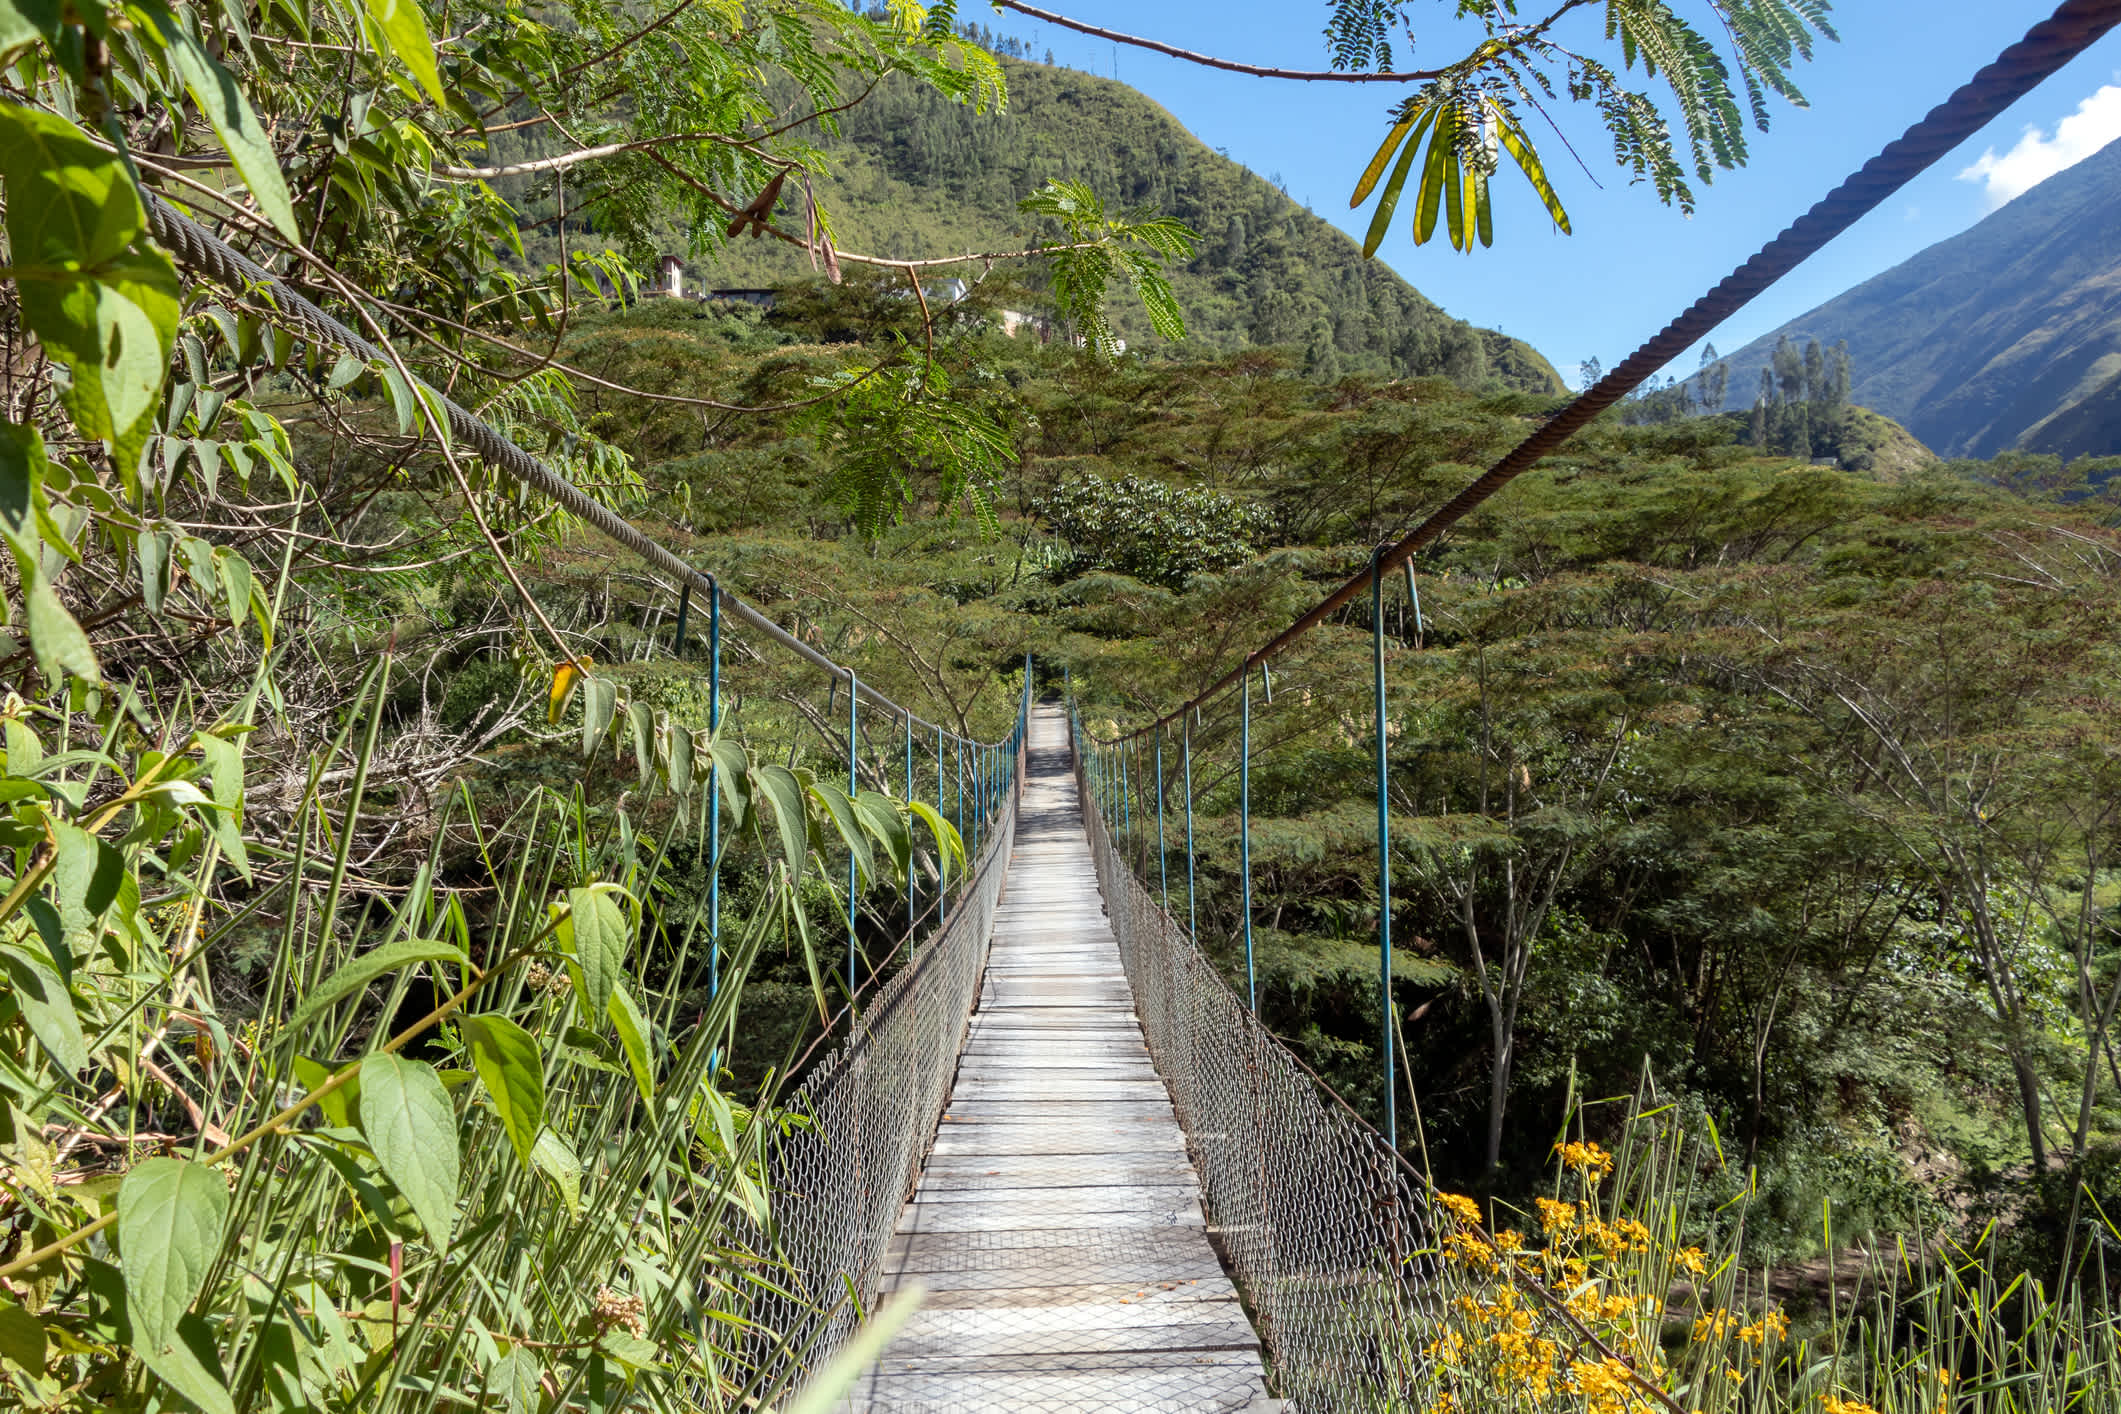 Hängebrücke hängt über dem Fluss Santa Teresa im grünen, üppigen Tal. Trek nach Machu Picchu, Peru